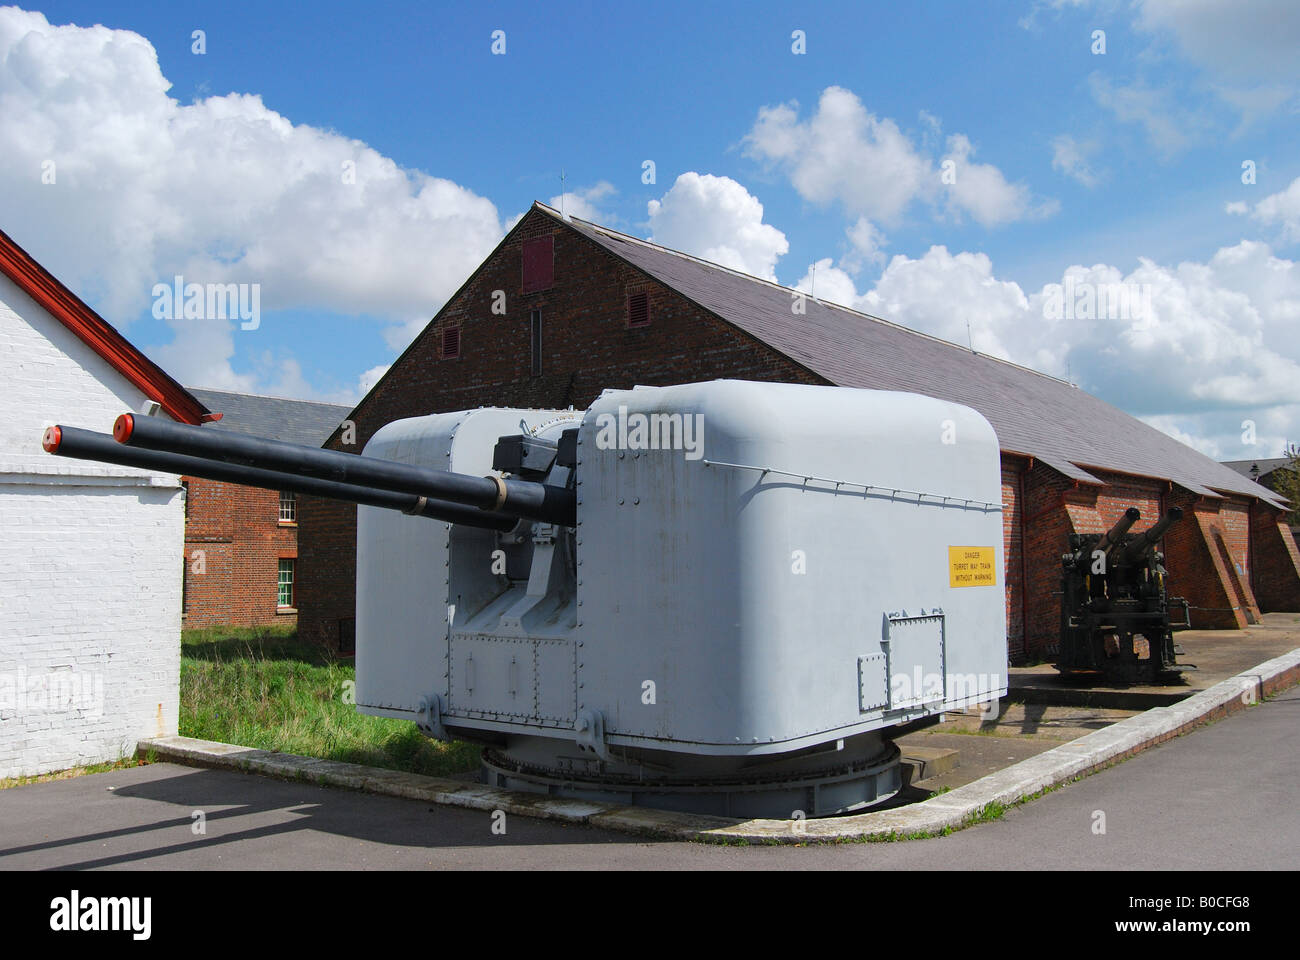 Vieux fusil de guerre, 'explosion' Museum of Naval de Feu, Gosport, Hampshire, Angleterre, Royaume-Uni Banque D'Images